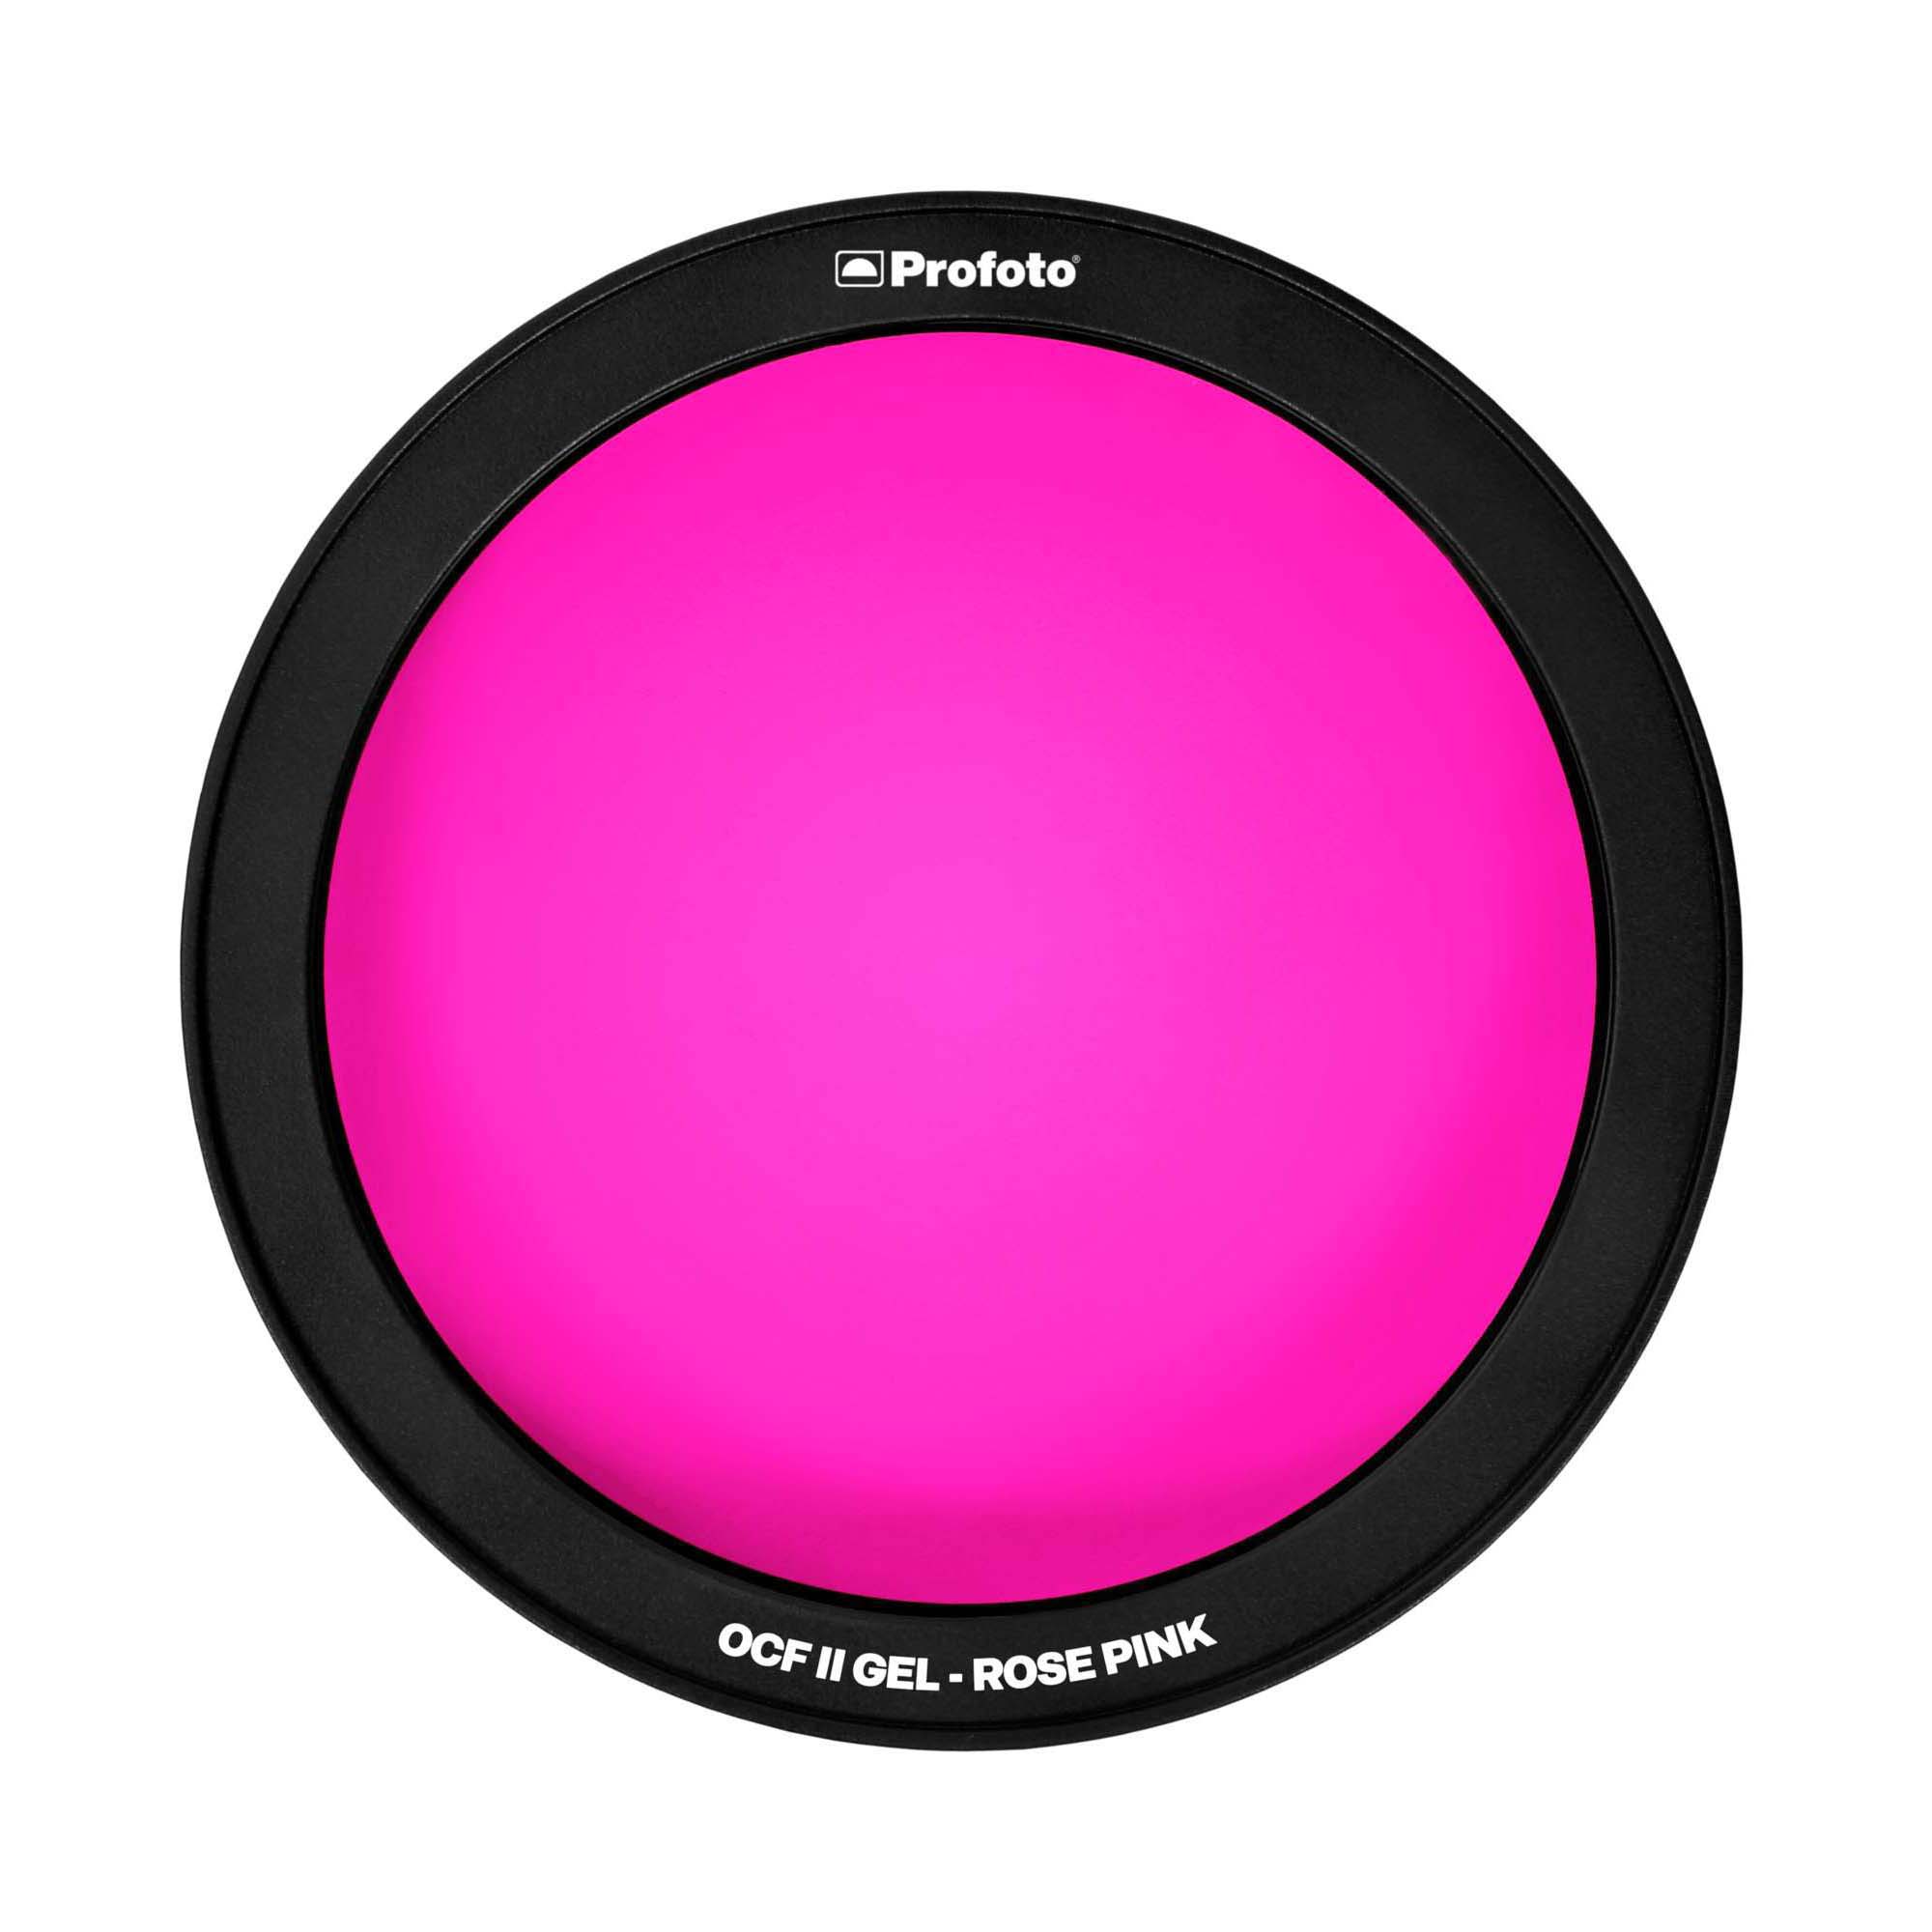 PROFOTO OCF II GEL ROSE PINK PARA B10 - B10 PLUS - B1X PROFOTO 